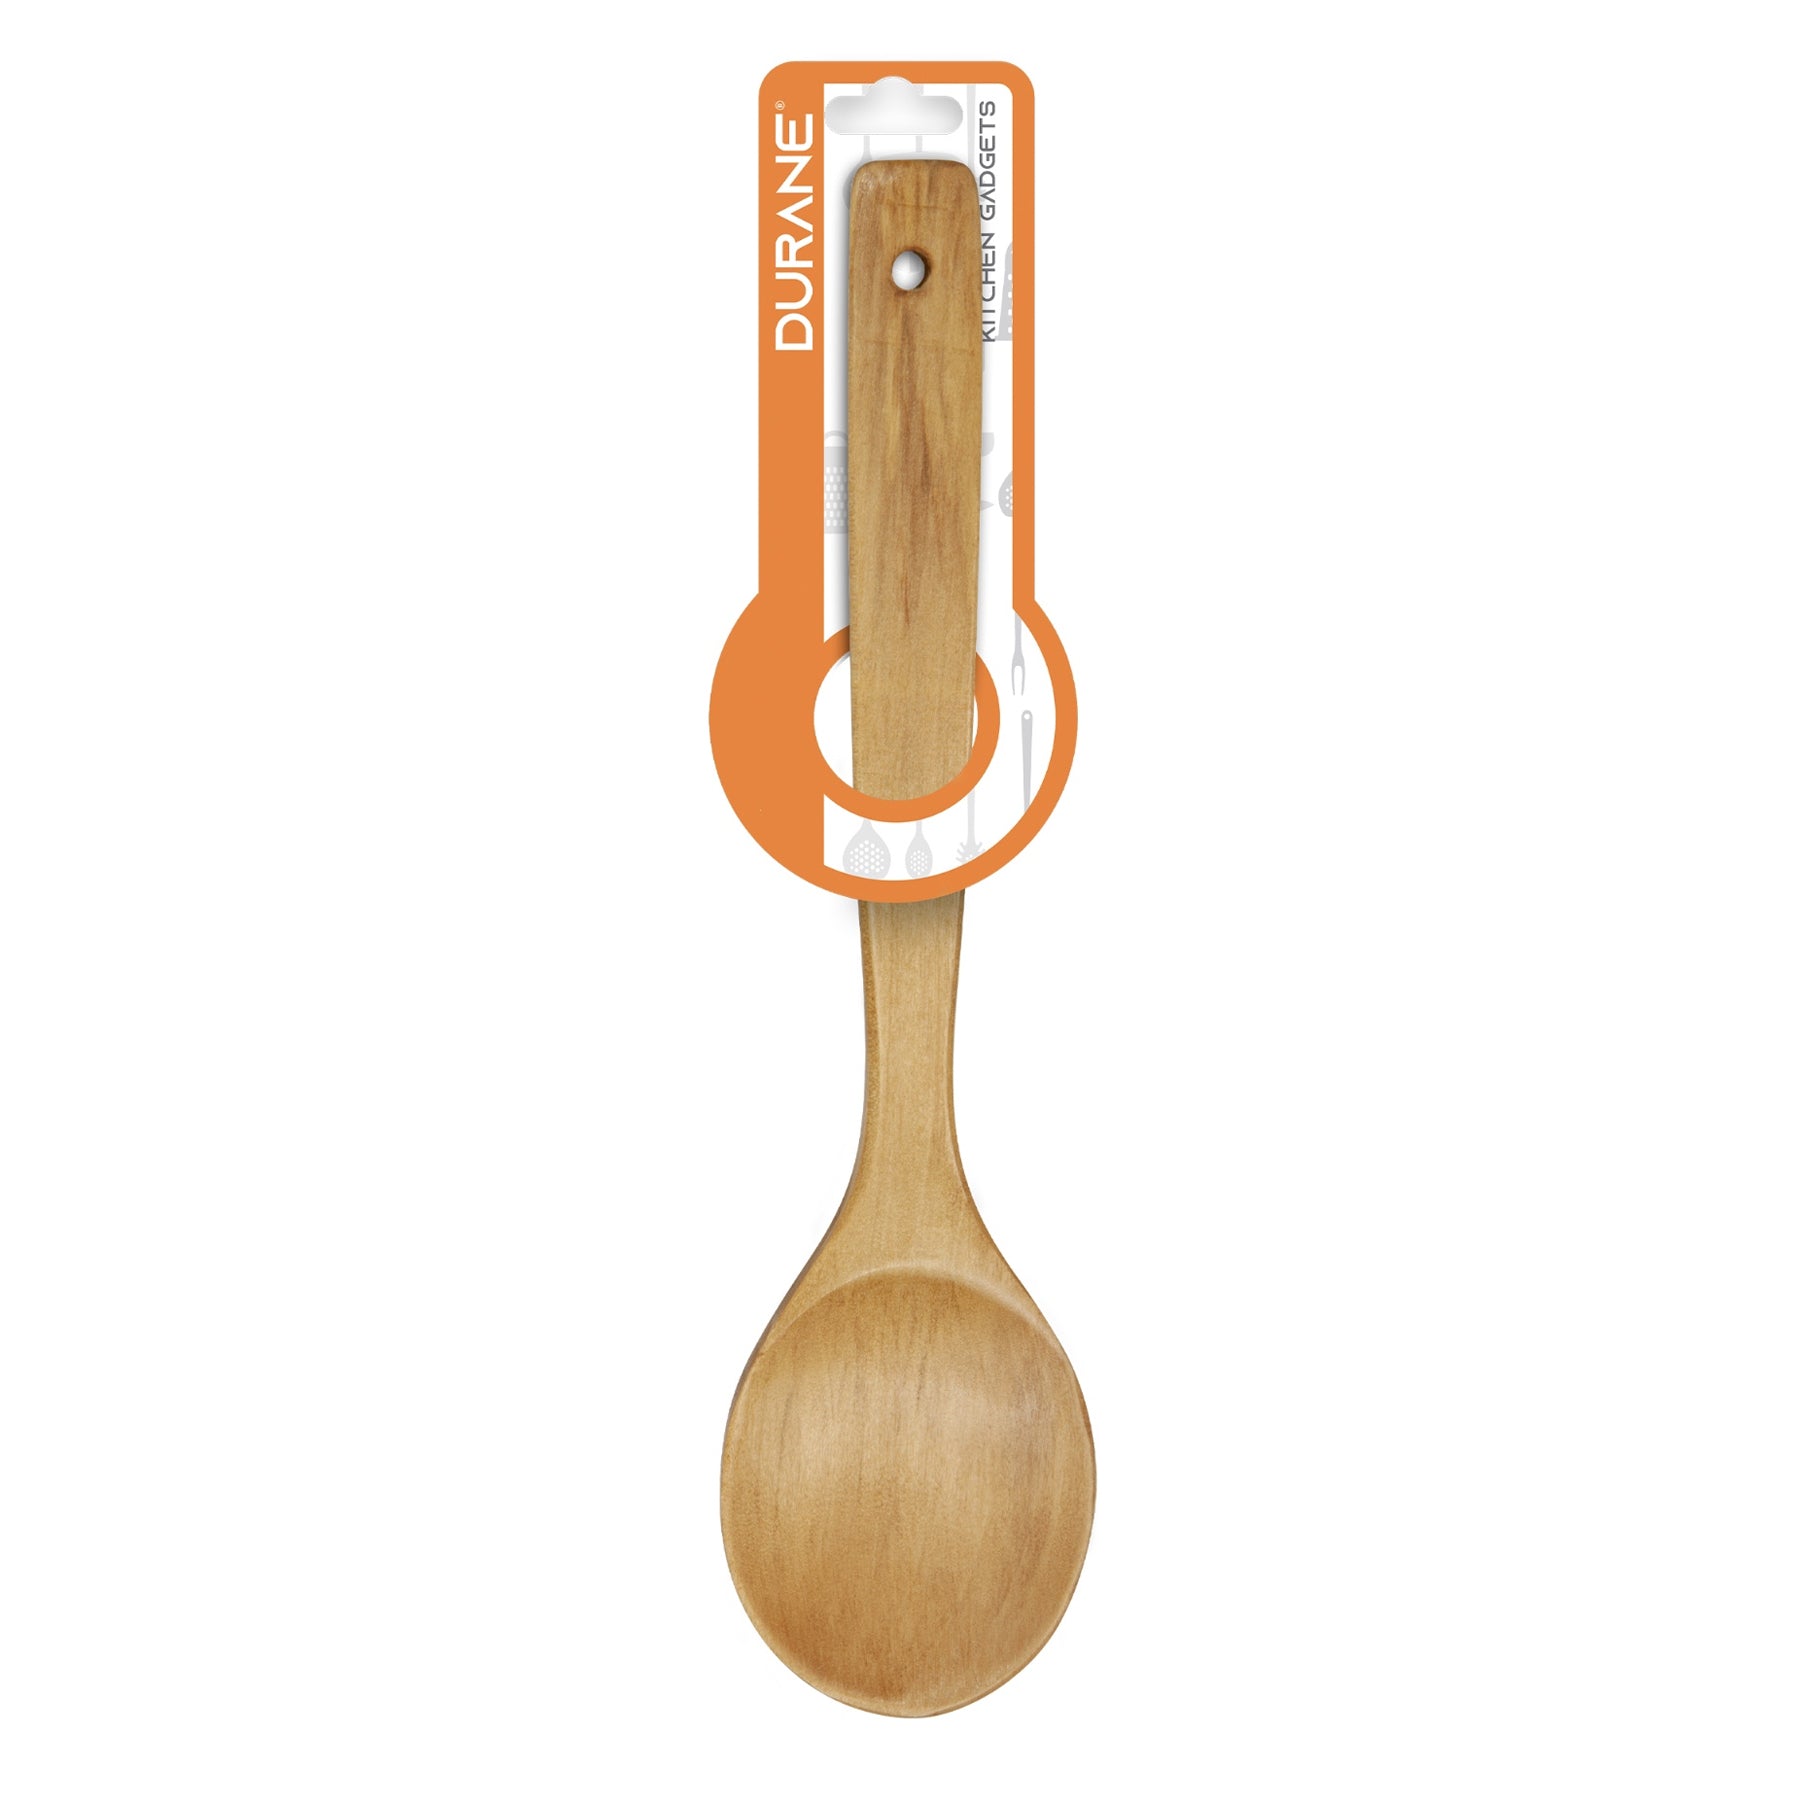 Durane Wooden Spoon - 14 inch